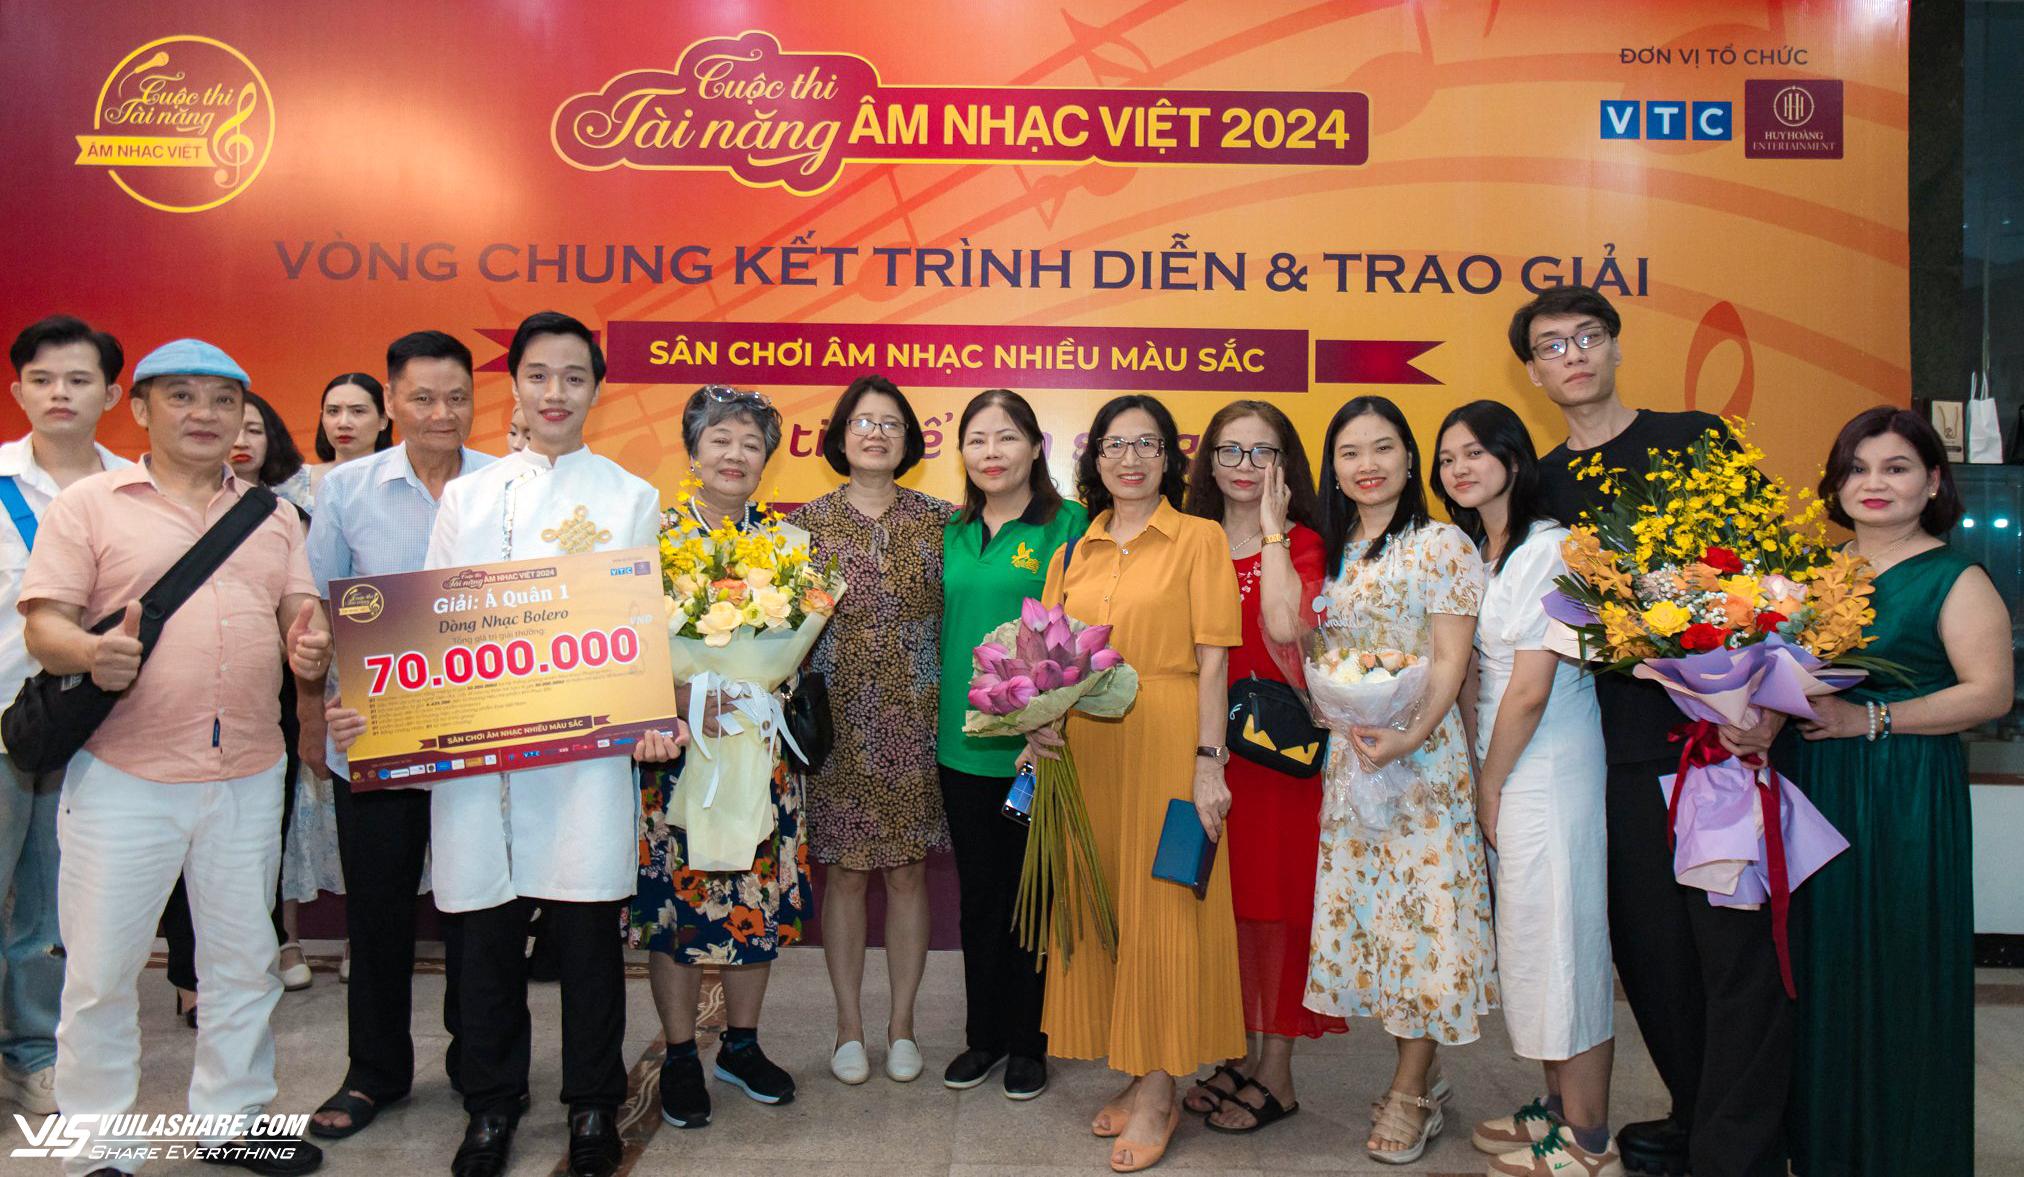 Á quân Tài năng âm nhạc Việt 2024 là bước đệm để Phi Hoàng theo đuổi đam mê ca hát